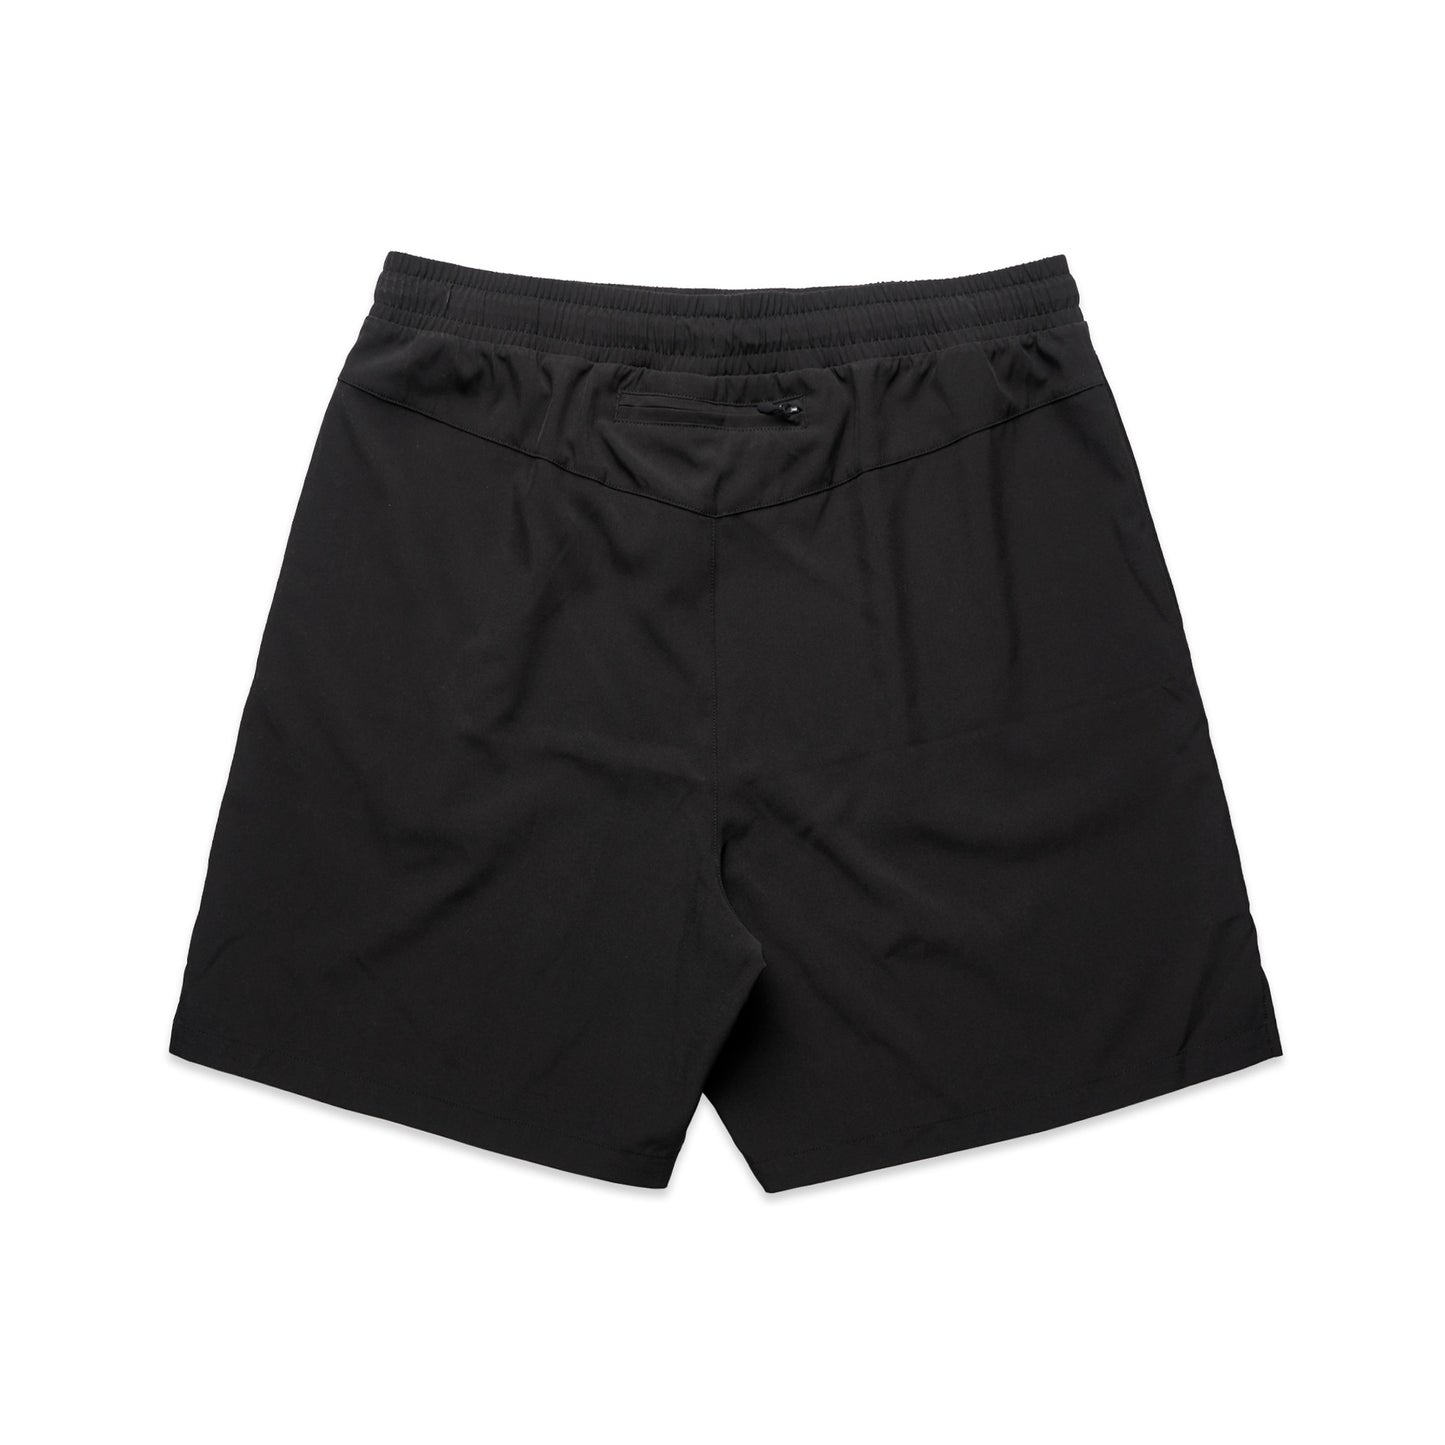 Ascolour Mens Active Shorts (5620)